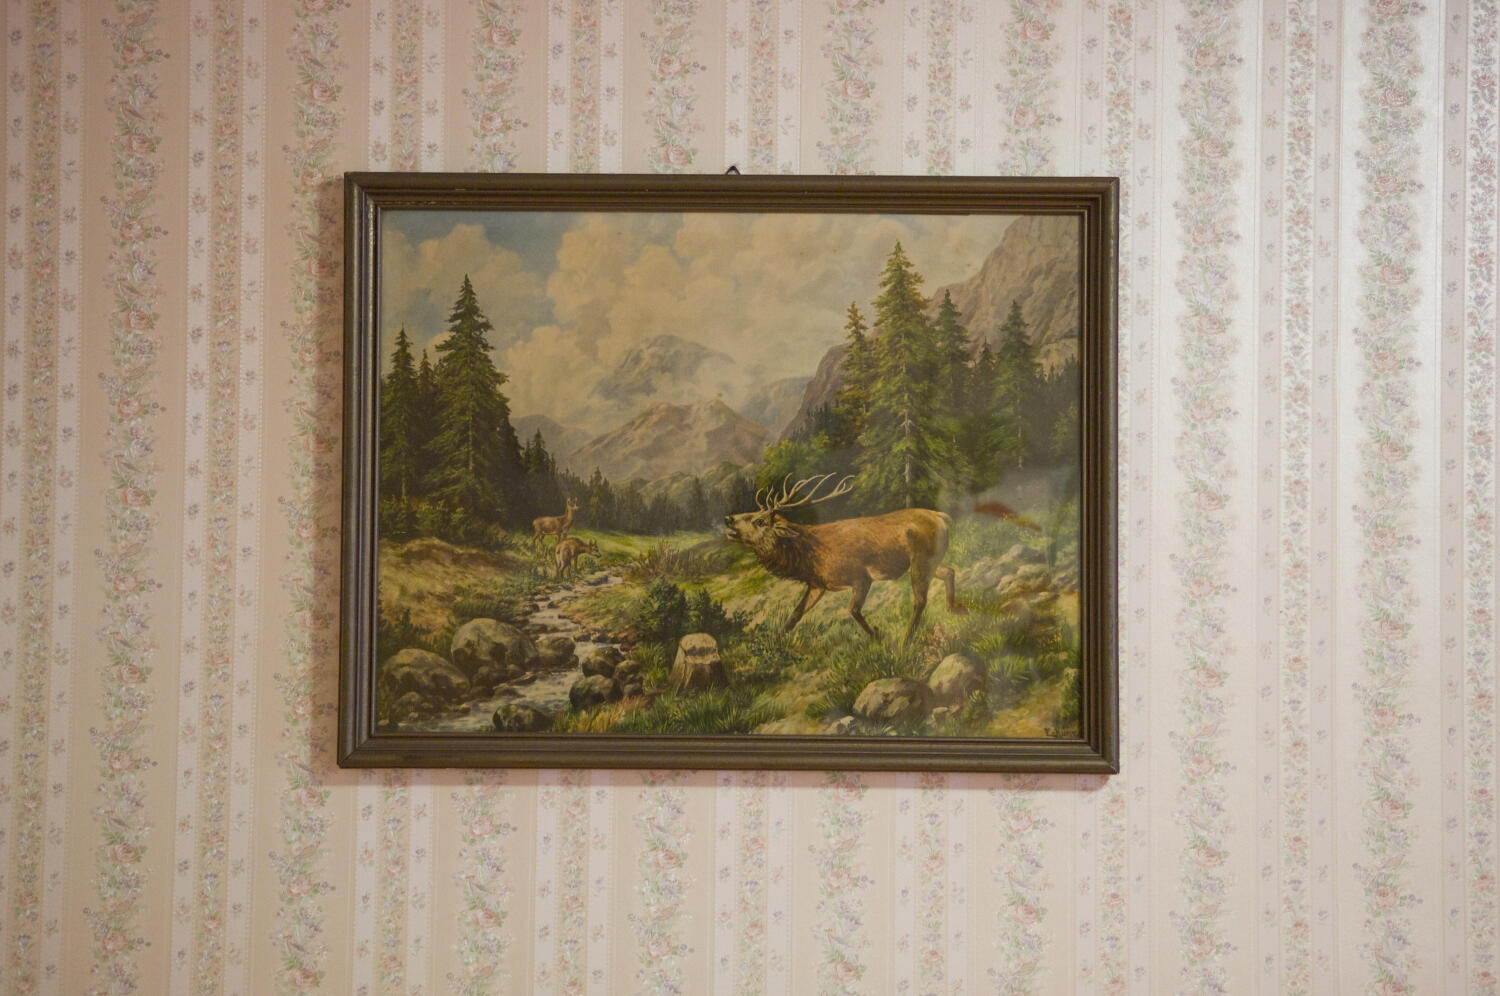 Auf einer zart geblümten Wand   in Streifen hängt ein großes, dunkel gerahmtes Bild einer Gebirgslandschaft, einem Bach und dem  "berühmten röhrenden Hirsch" samt Ricke und Kitz.